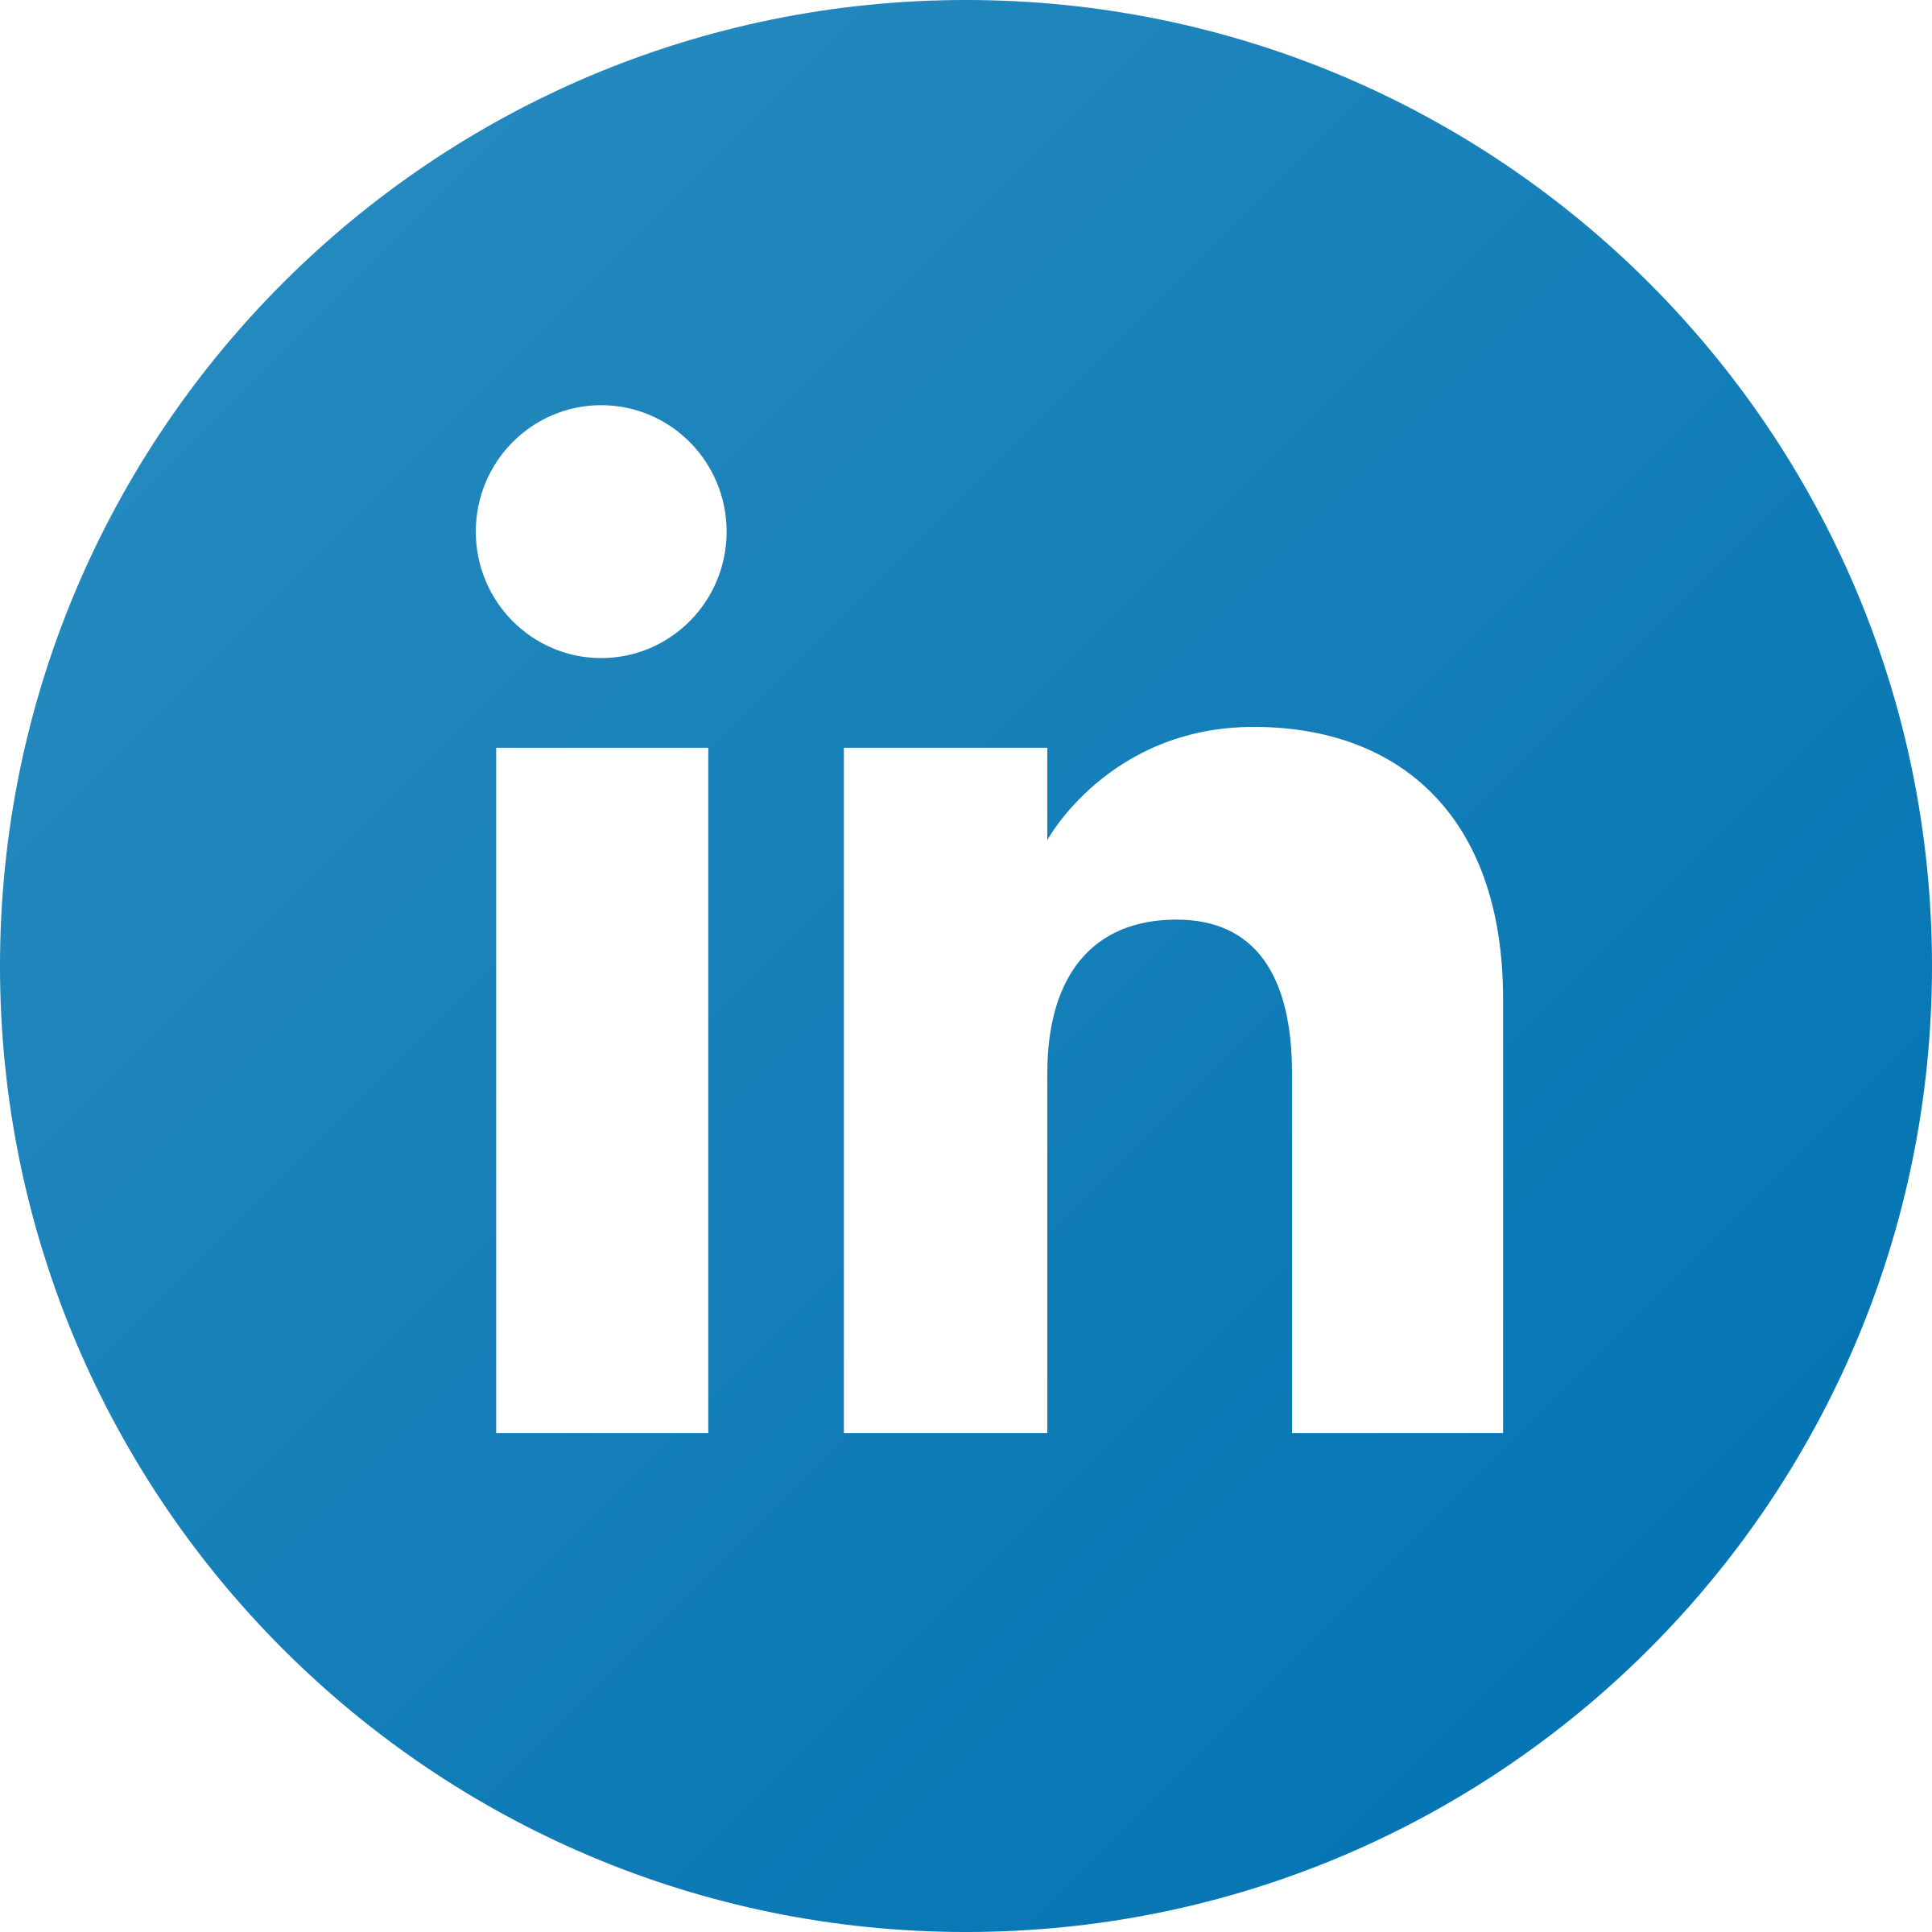 Logo do LinkedIn com fundo azul e as letras “in” em branco.